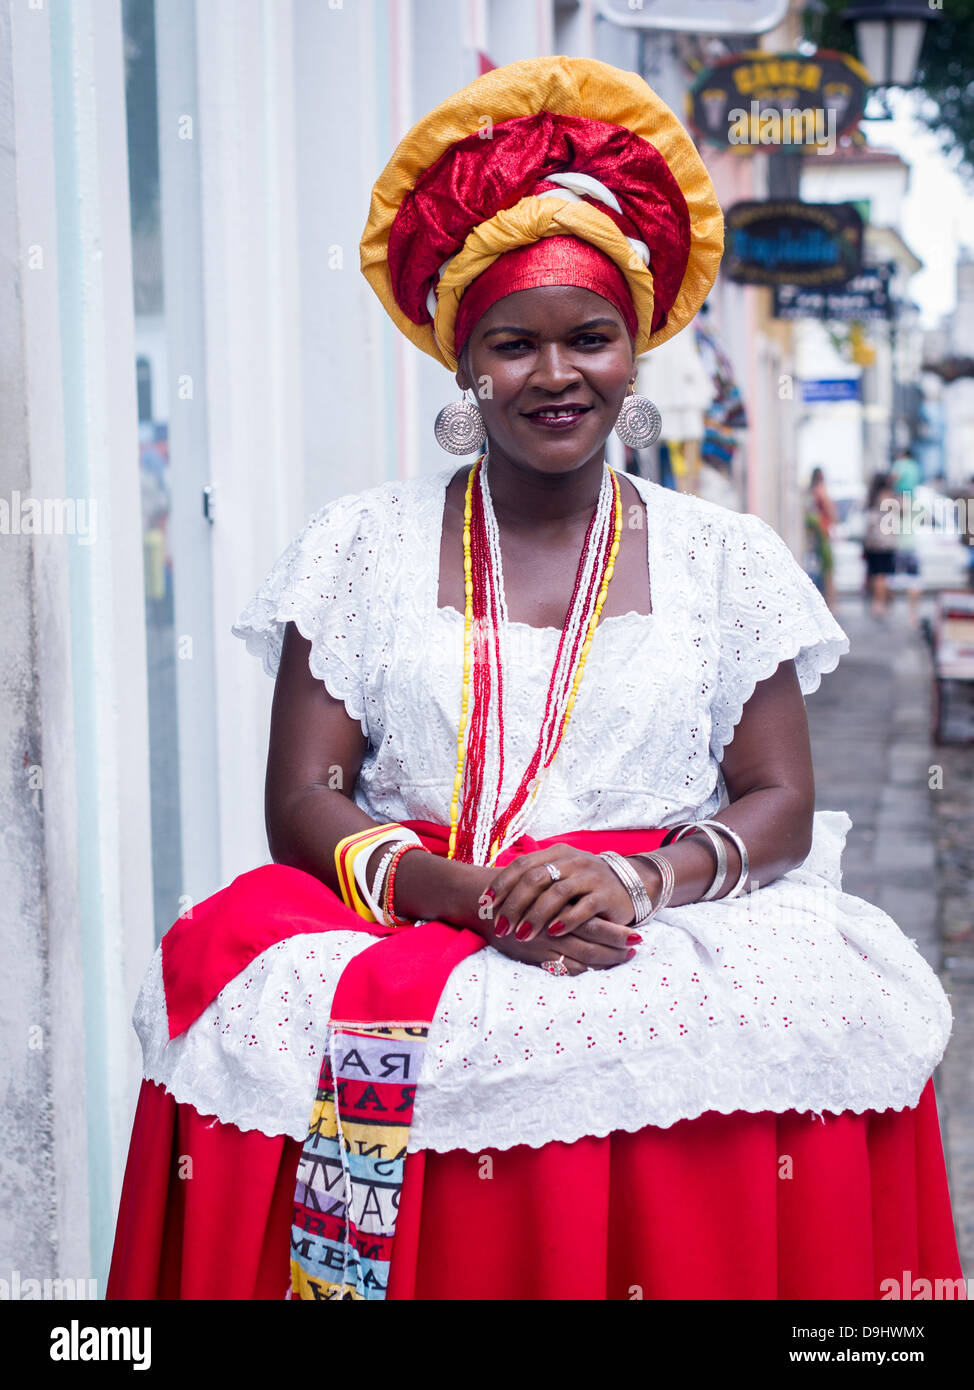 Femme portant des vêtements traditionnels de la région de Bahia du Brésil encourage les touristes o acheter des souvenirs à Salvador. Banque D'Images